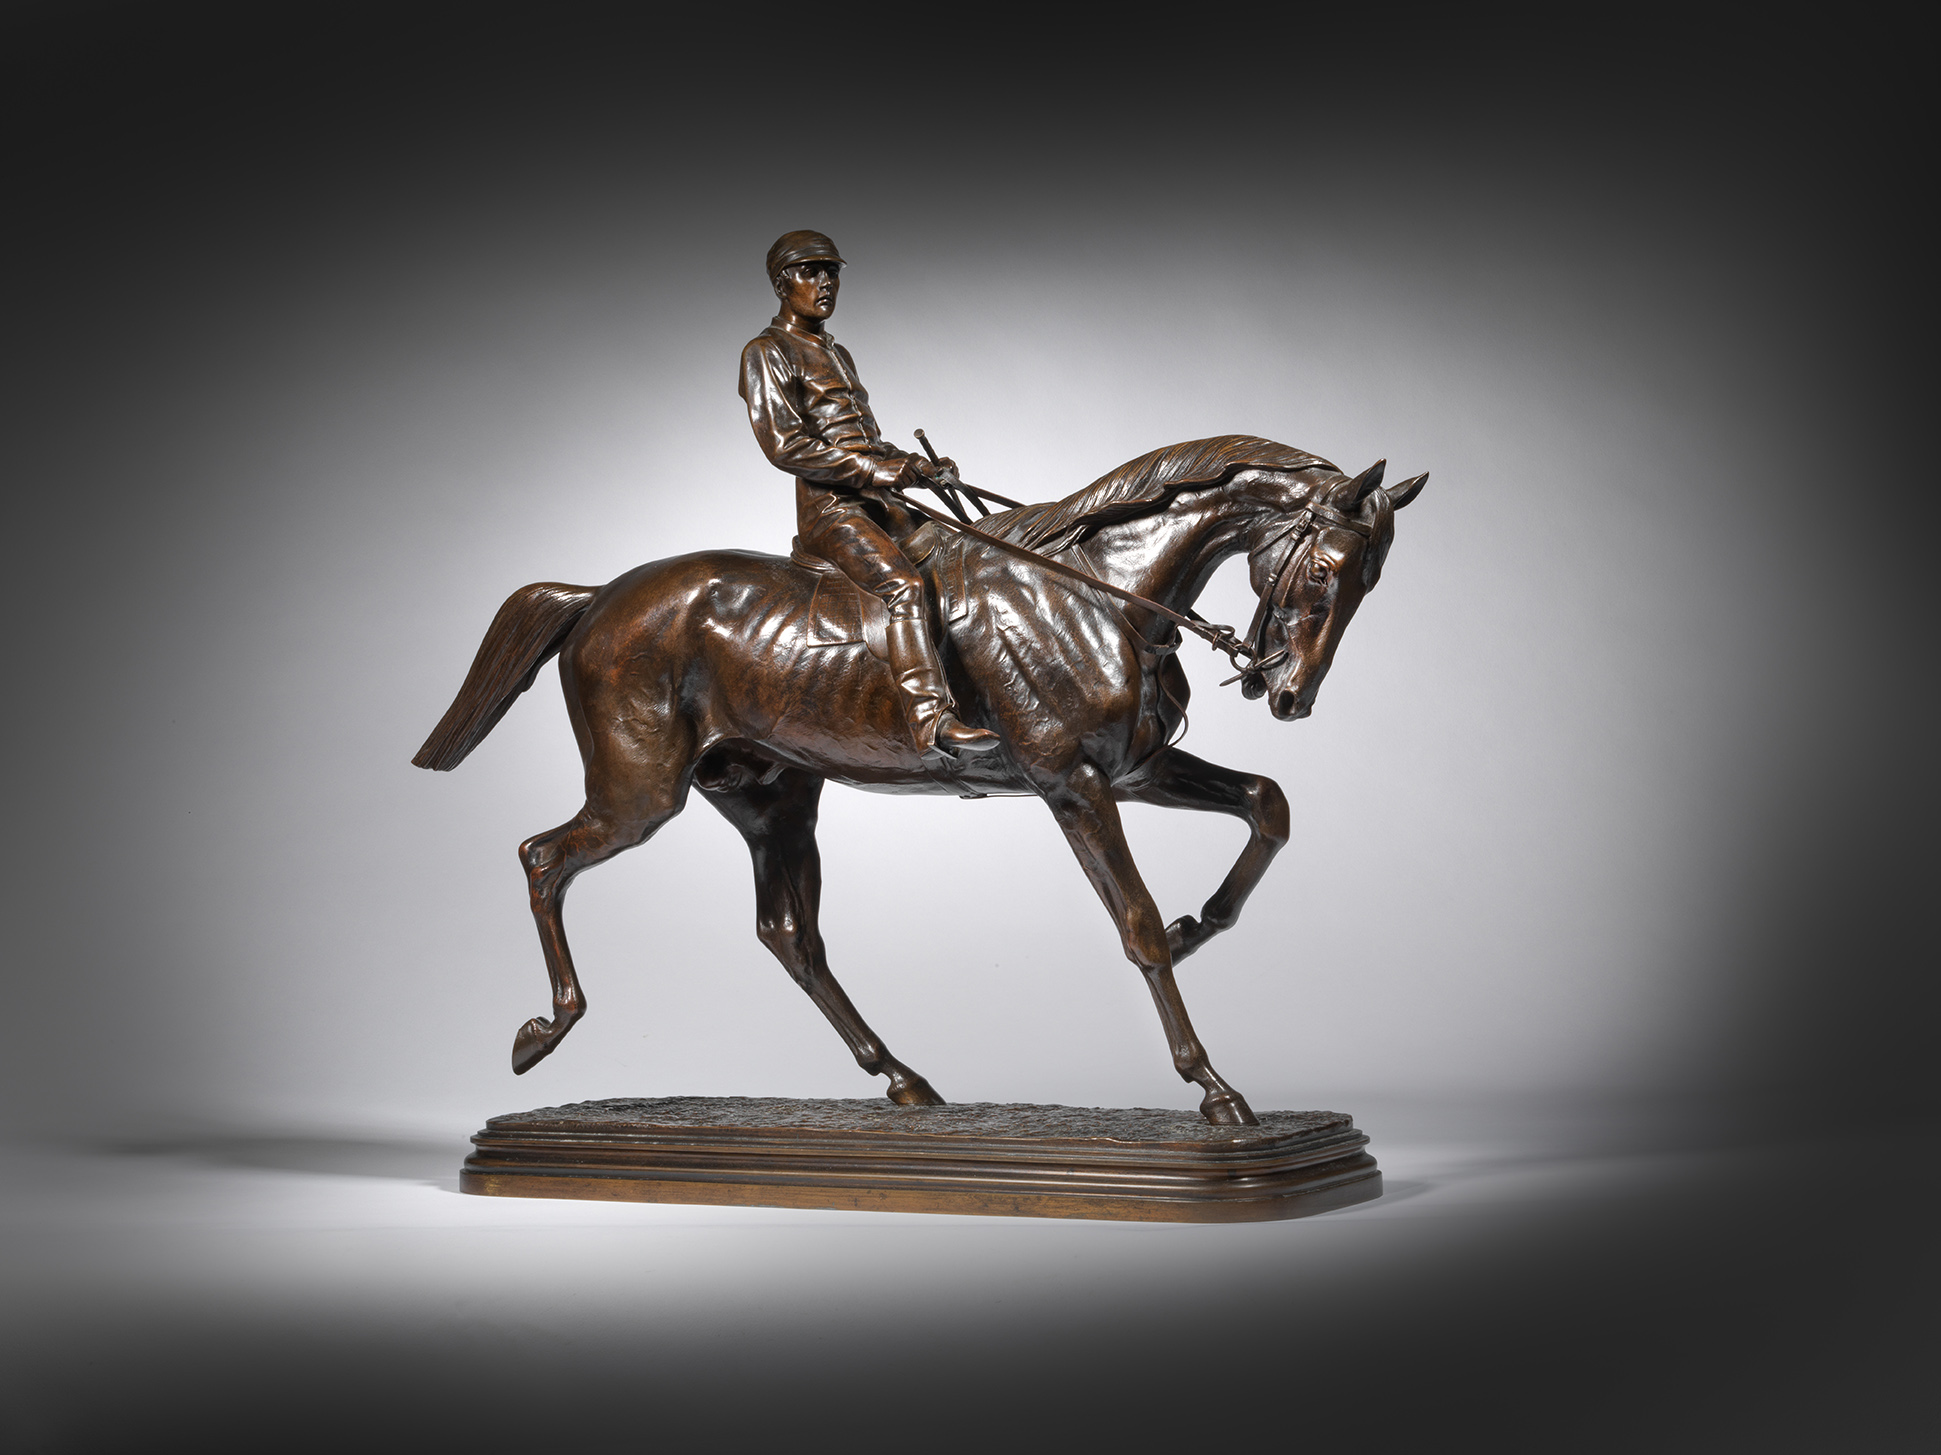 Horse and Jockey, Trotting, c. 1880